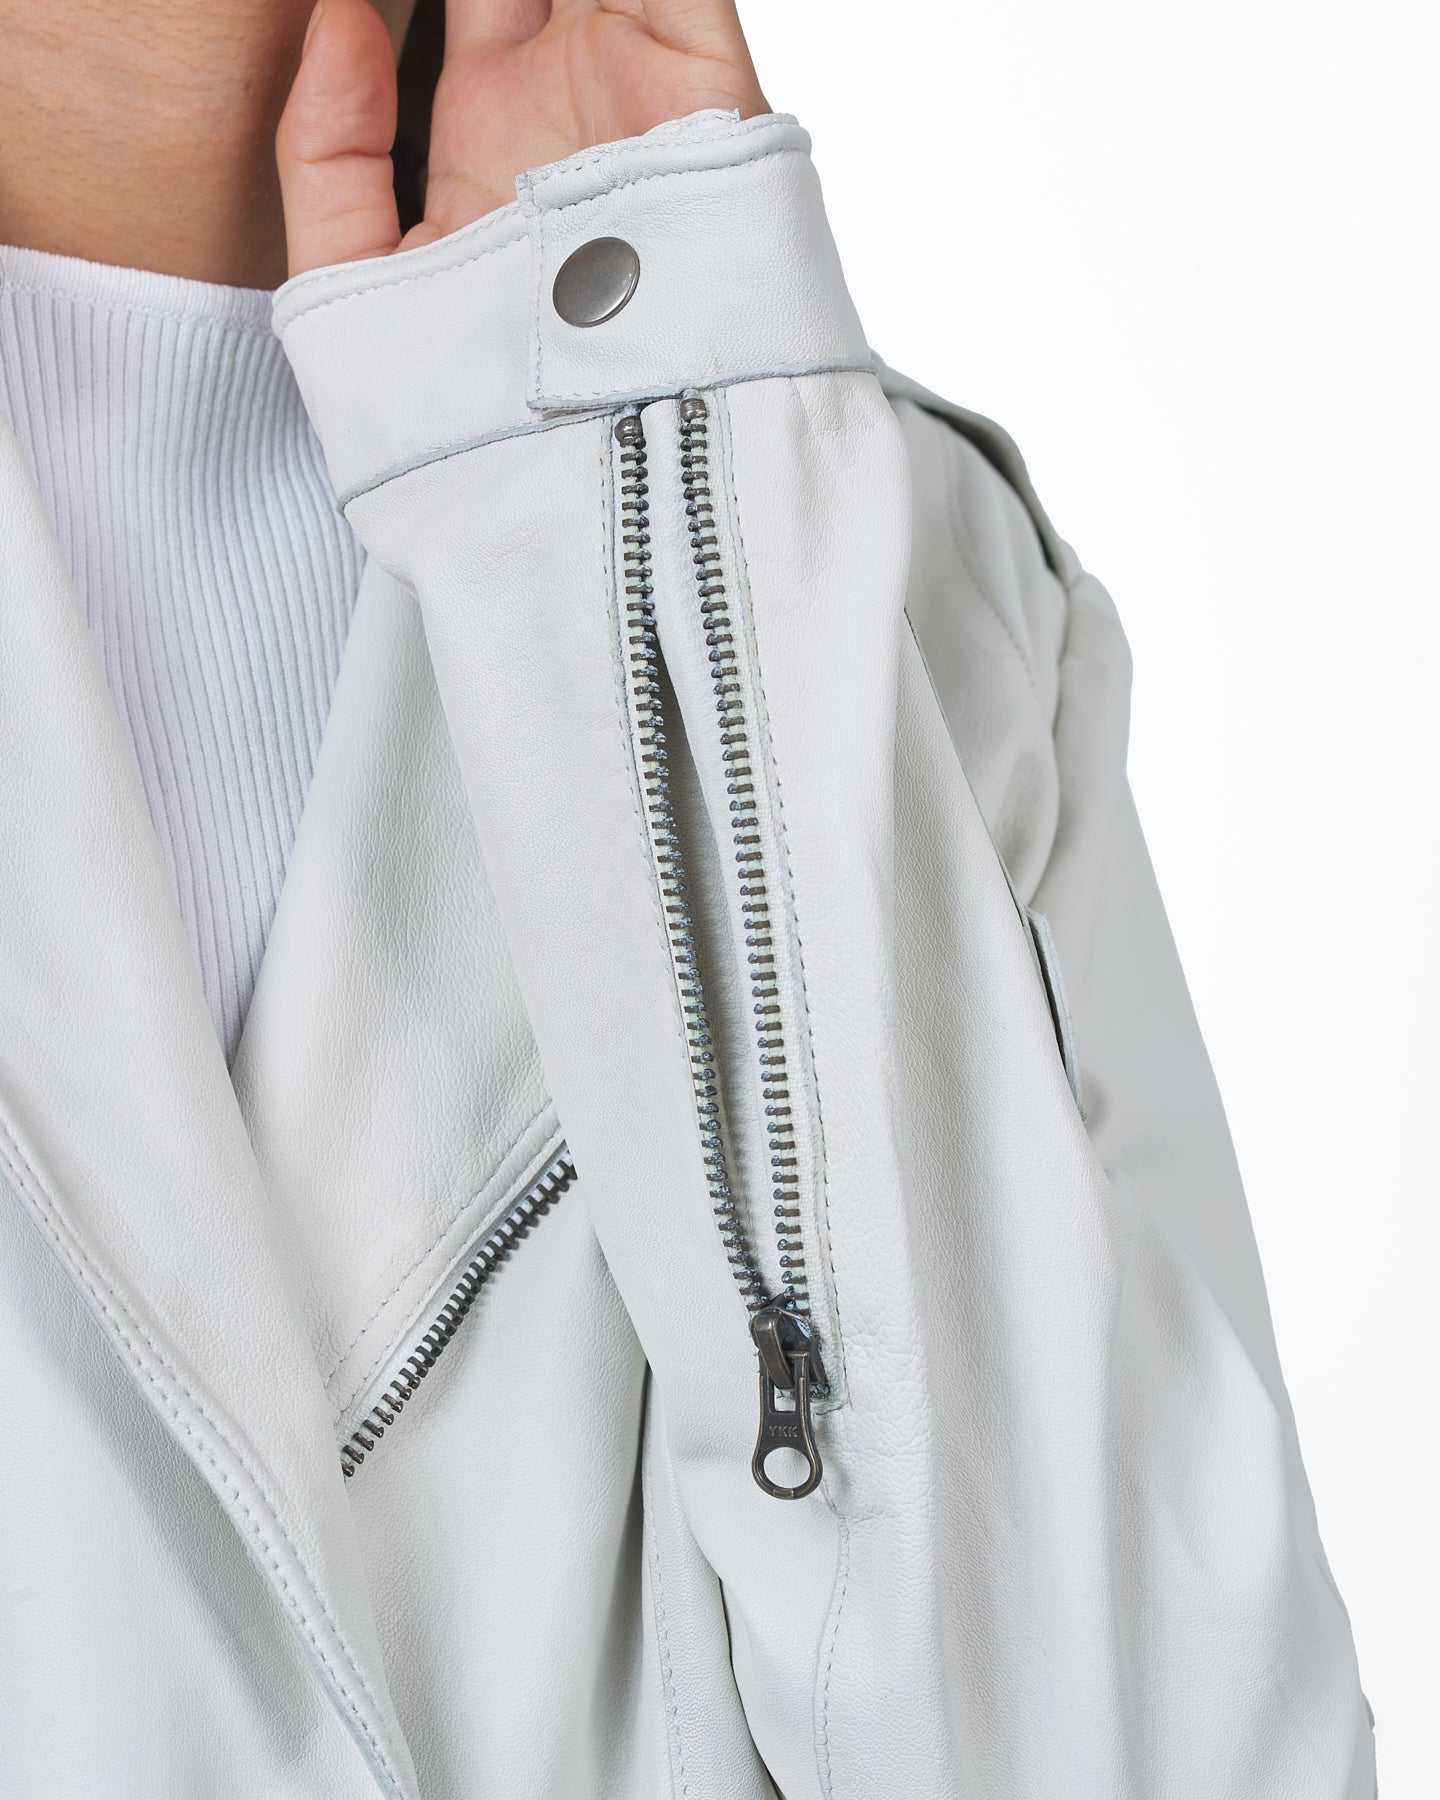 Jakett Josey Vintage Leather Jacket – White jakett